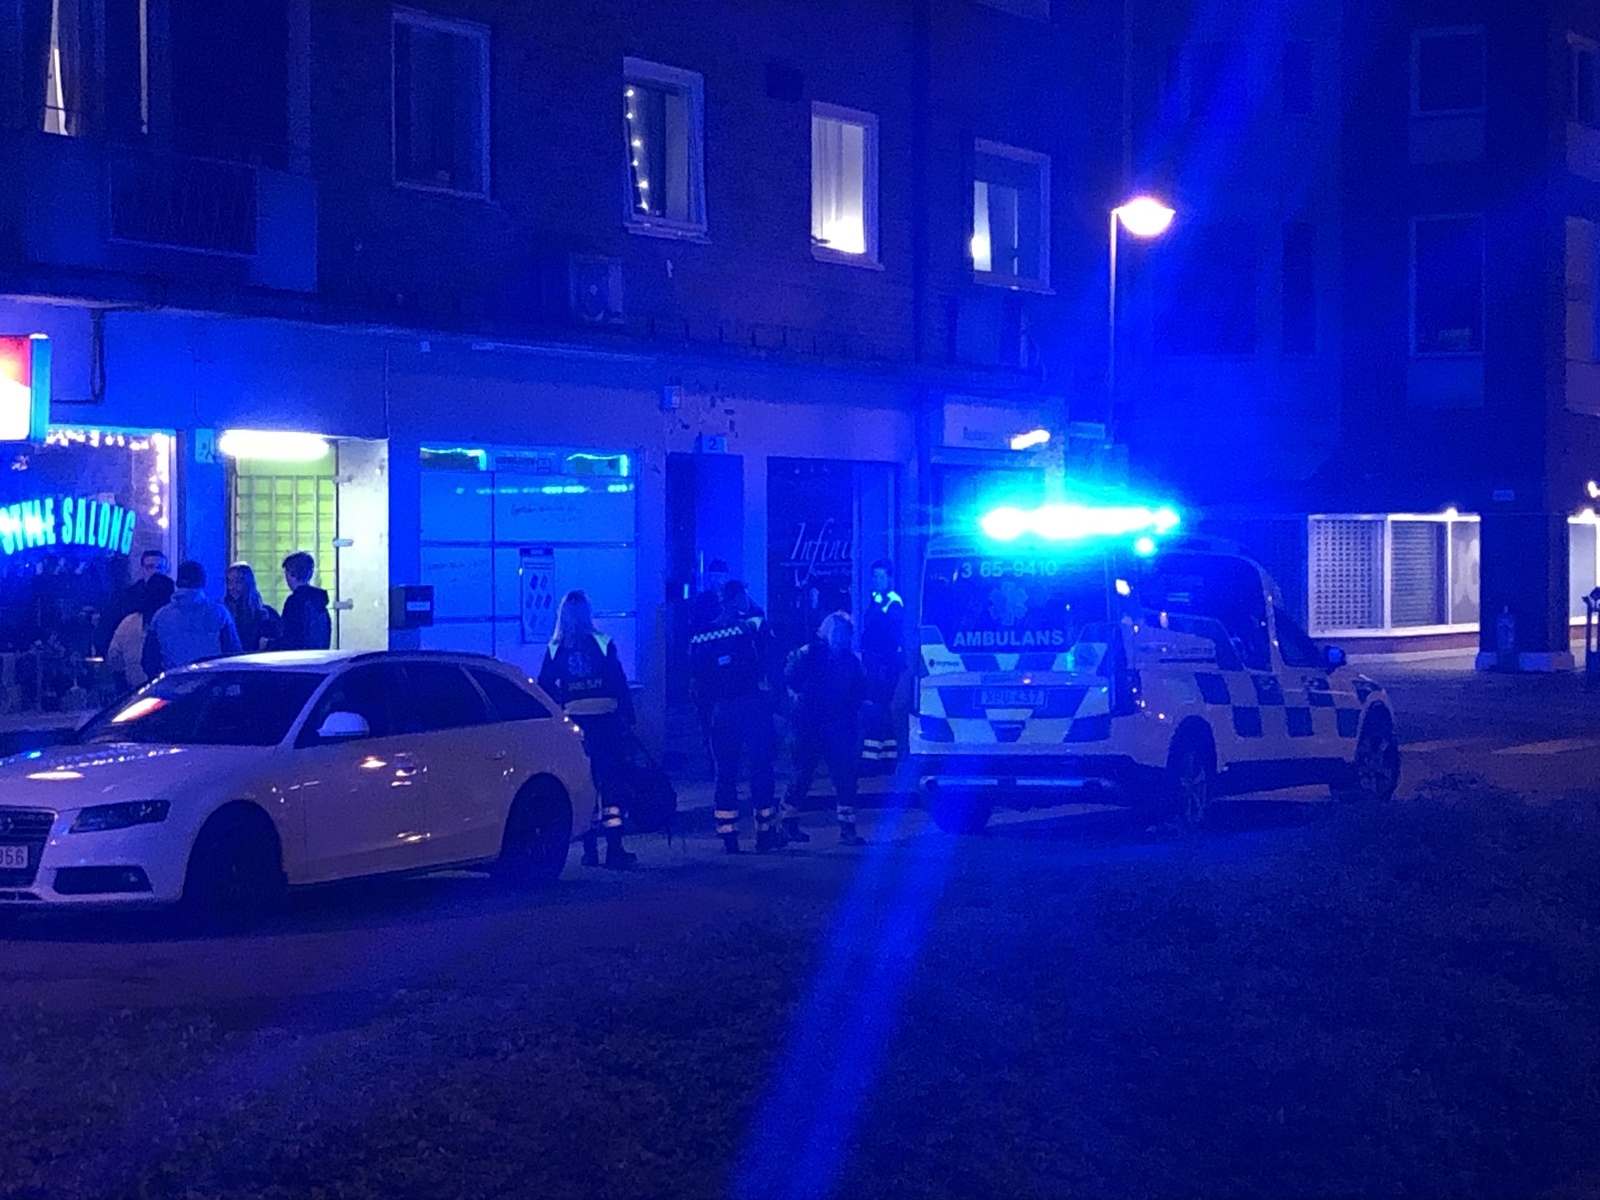 Tre ambulanser kom till platsen. Vid 00:20 kunde den skadade personen bäras ut ur huset på bår, och vidare in i ambulans. Foto: Lars-Åke Englund